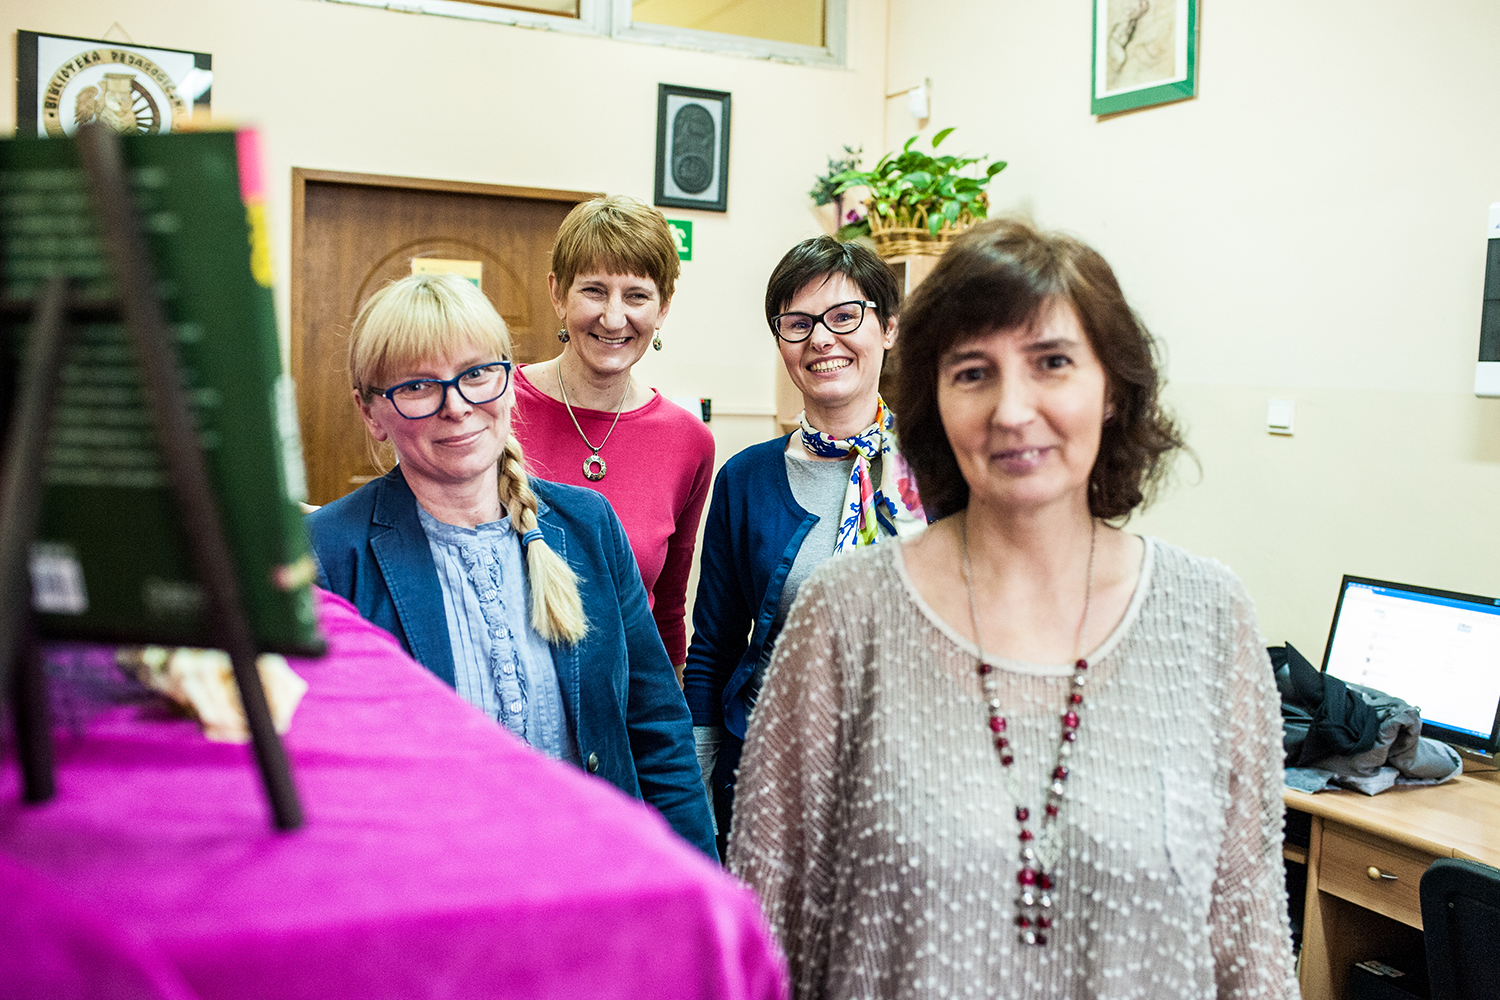 Pracownice Biblioteki Pedagogicznej w Raciborzu. Od lewej: Agata Śliwicka, Arleta Hoffmann-Piasecka, Jolanta Świątek-Gruszka i Sabina Frost